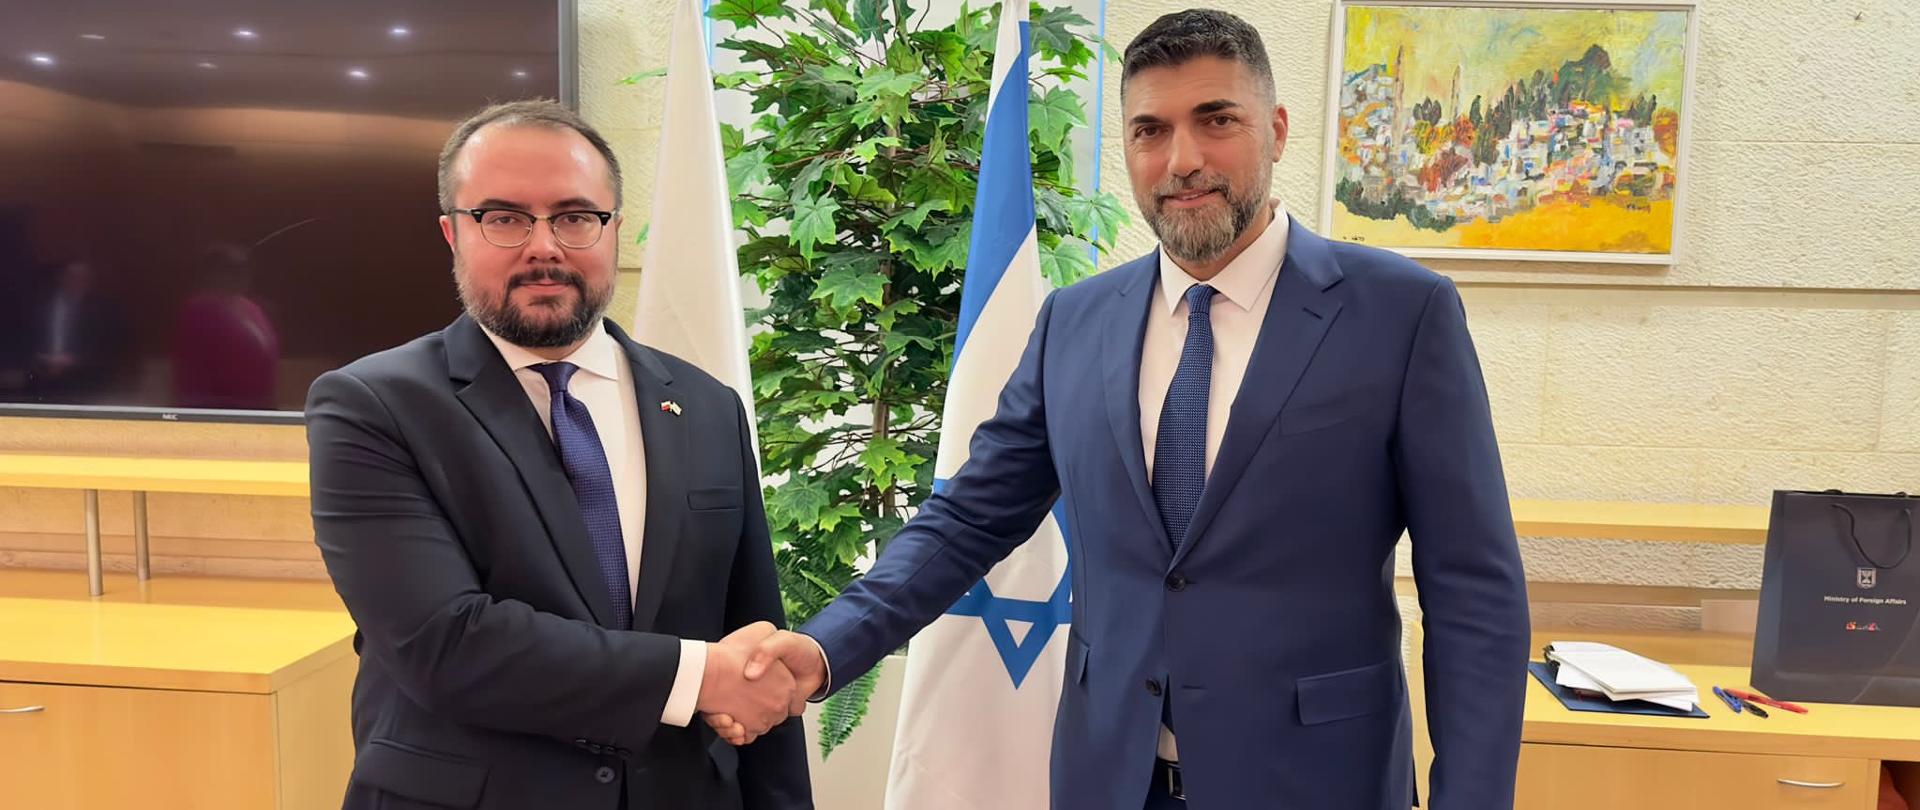 Deputy Minister Pawel Jablonski visited Israel and Palestine